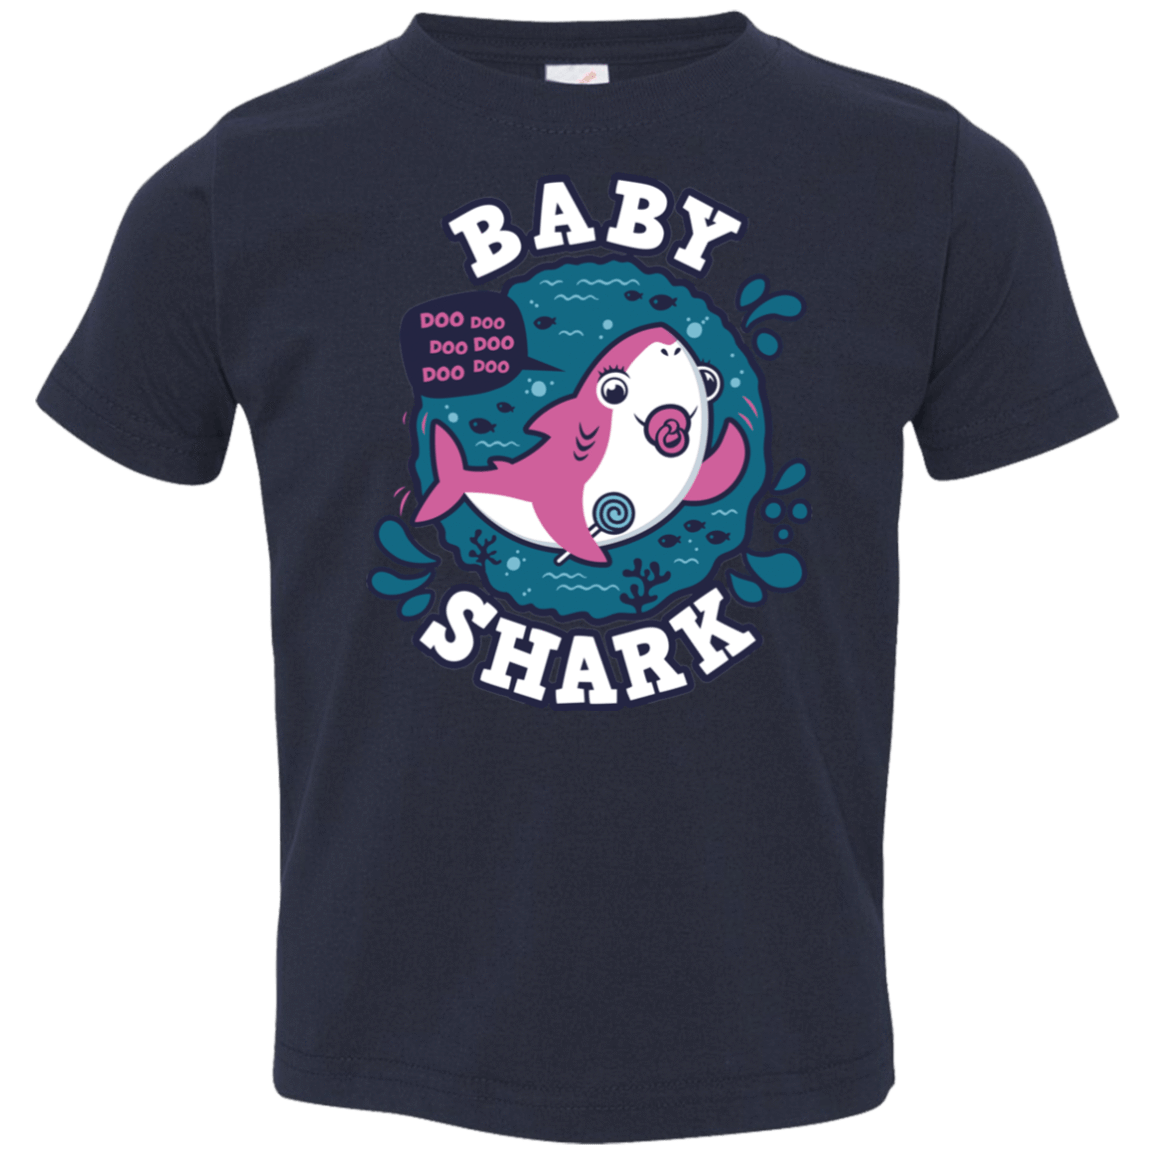 T-Shirts Navy / 2T Shark Family trazo - Baby Girl chupete Toddler Premium T-Shirt